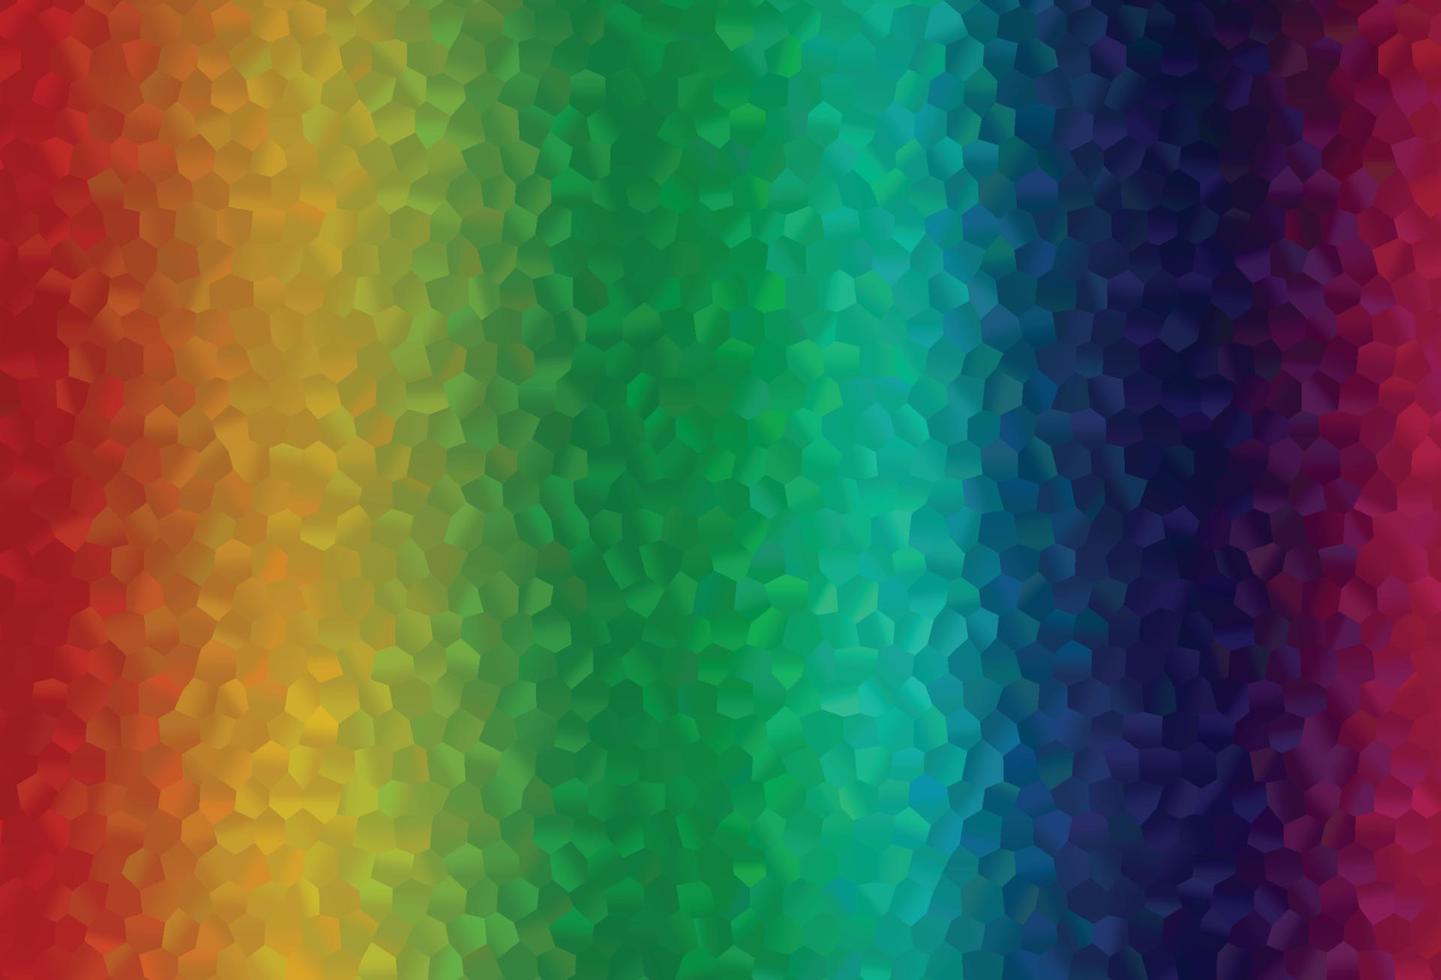 multicolore chiaro, copertina vettoriale arcobaleno con set di esagoni.